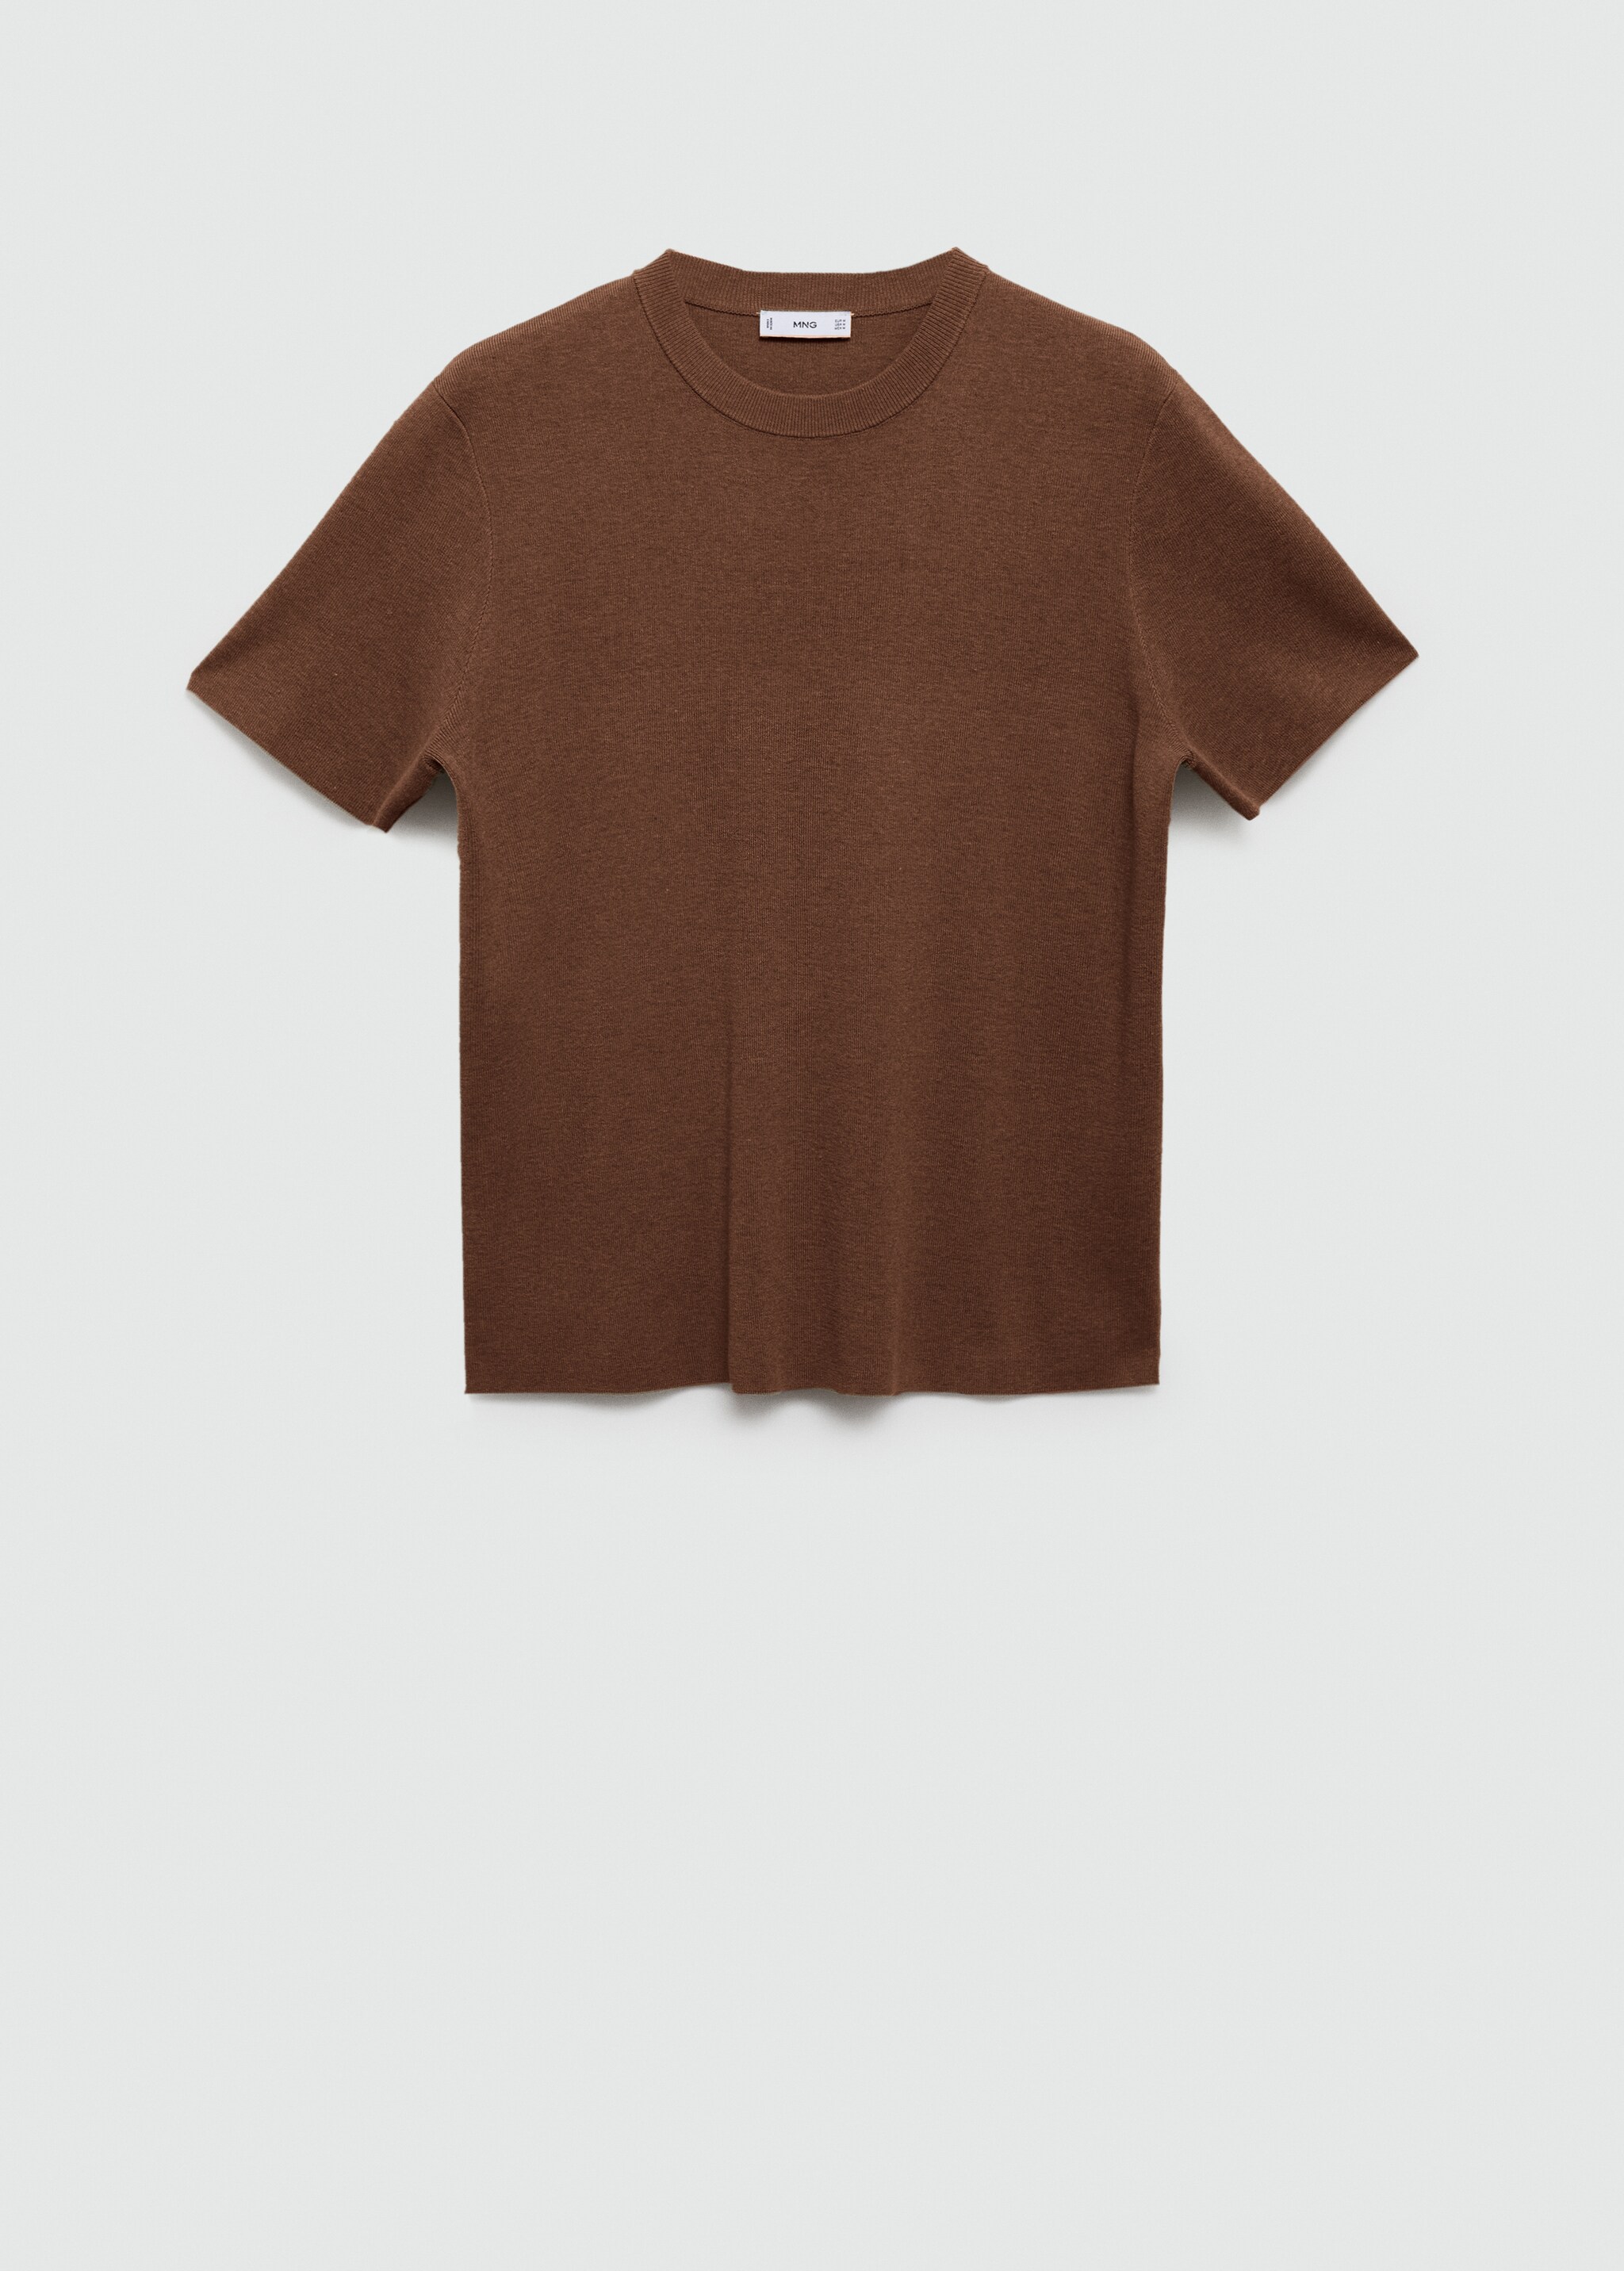 Pamuk dokuma tişört - Modelsiz ürün